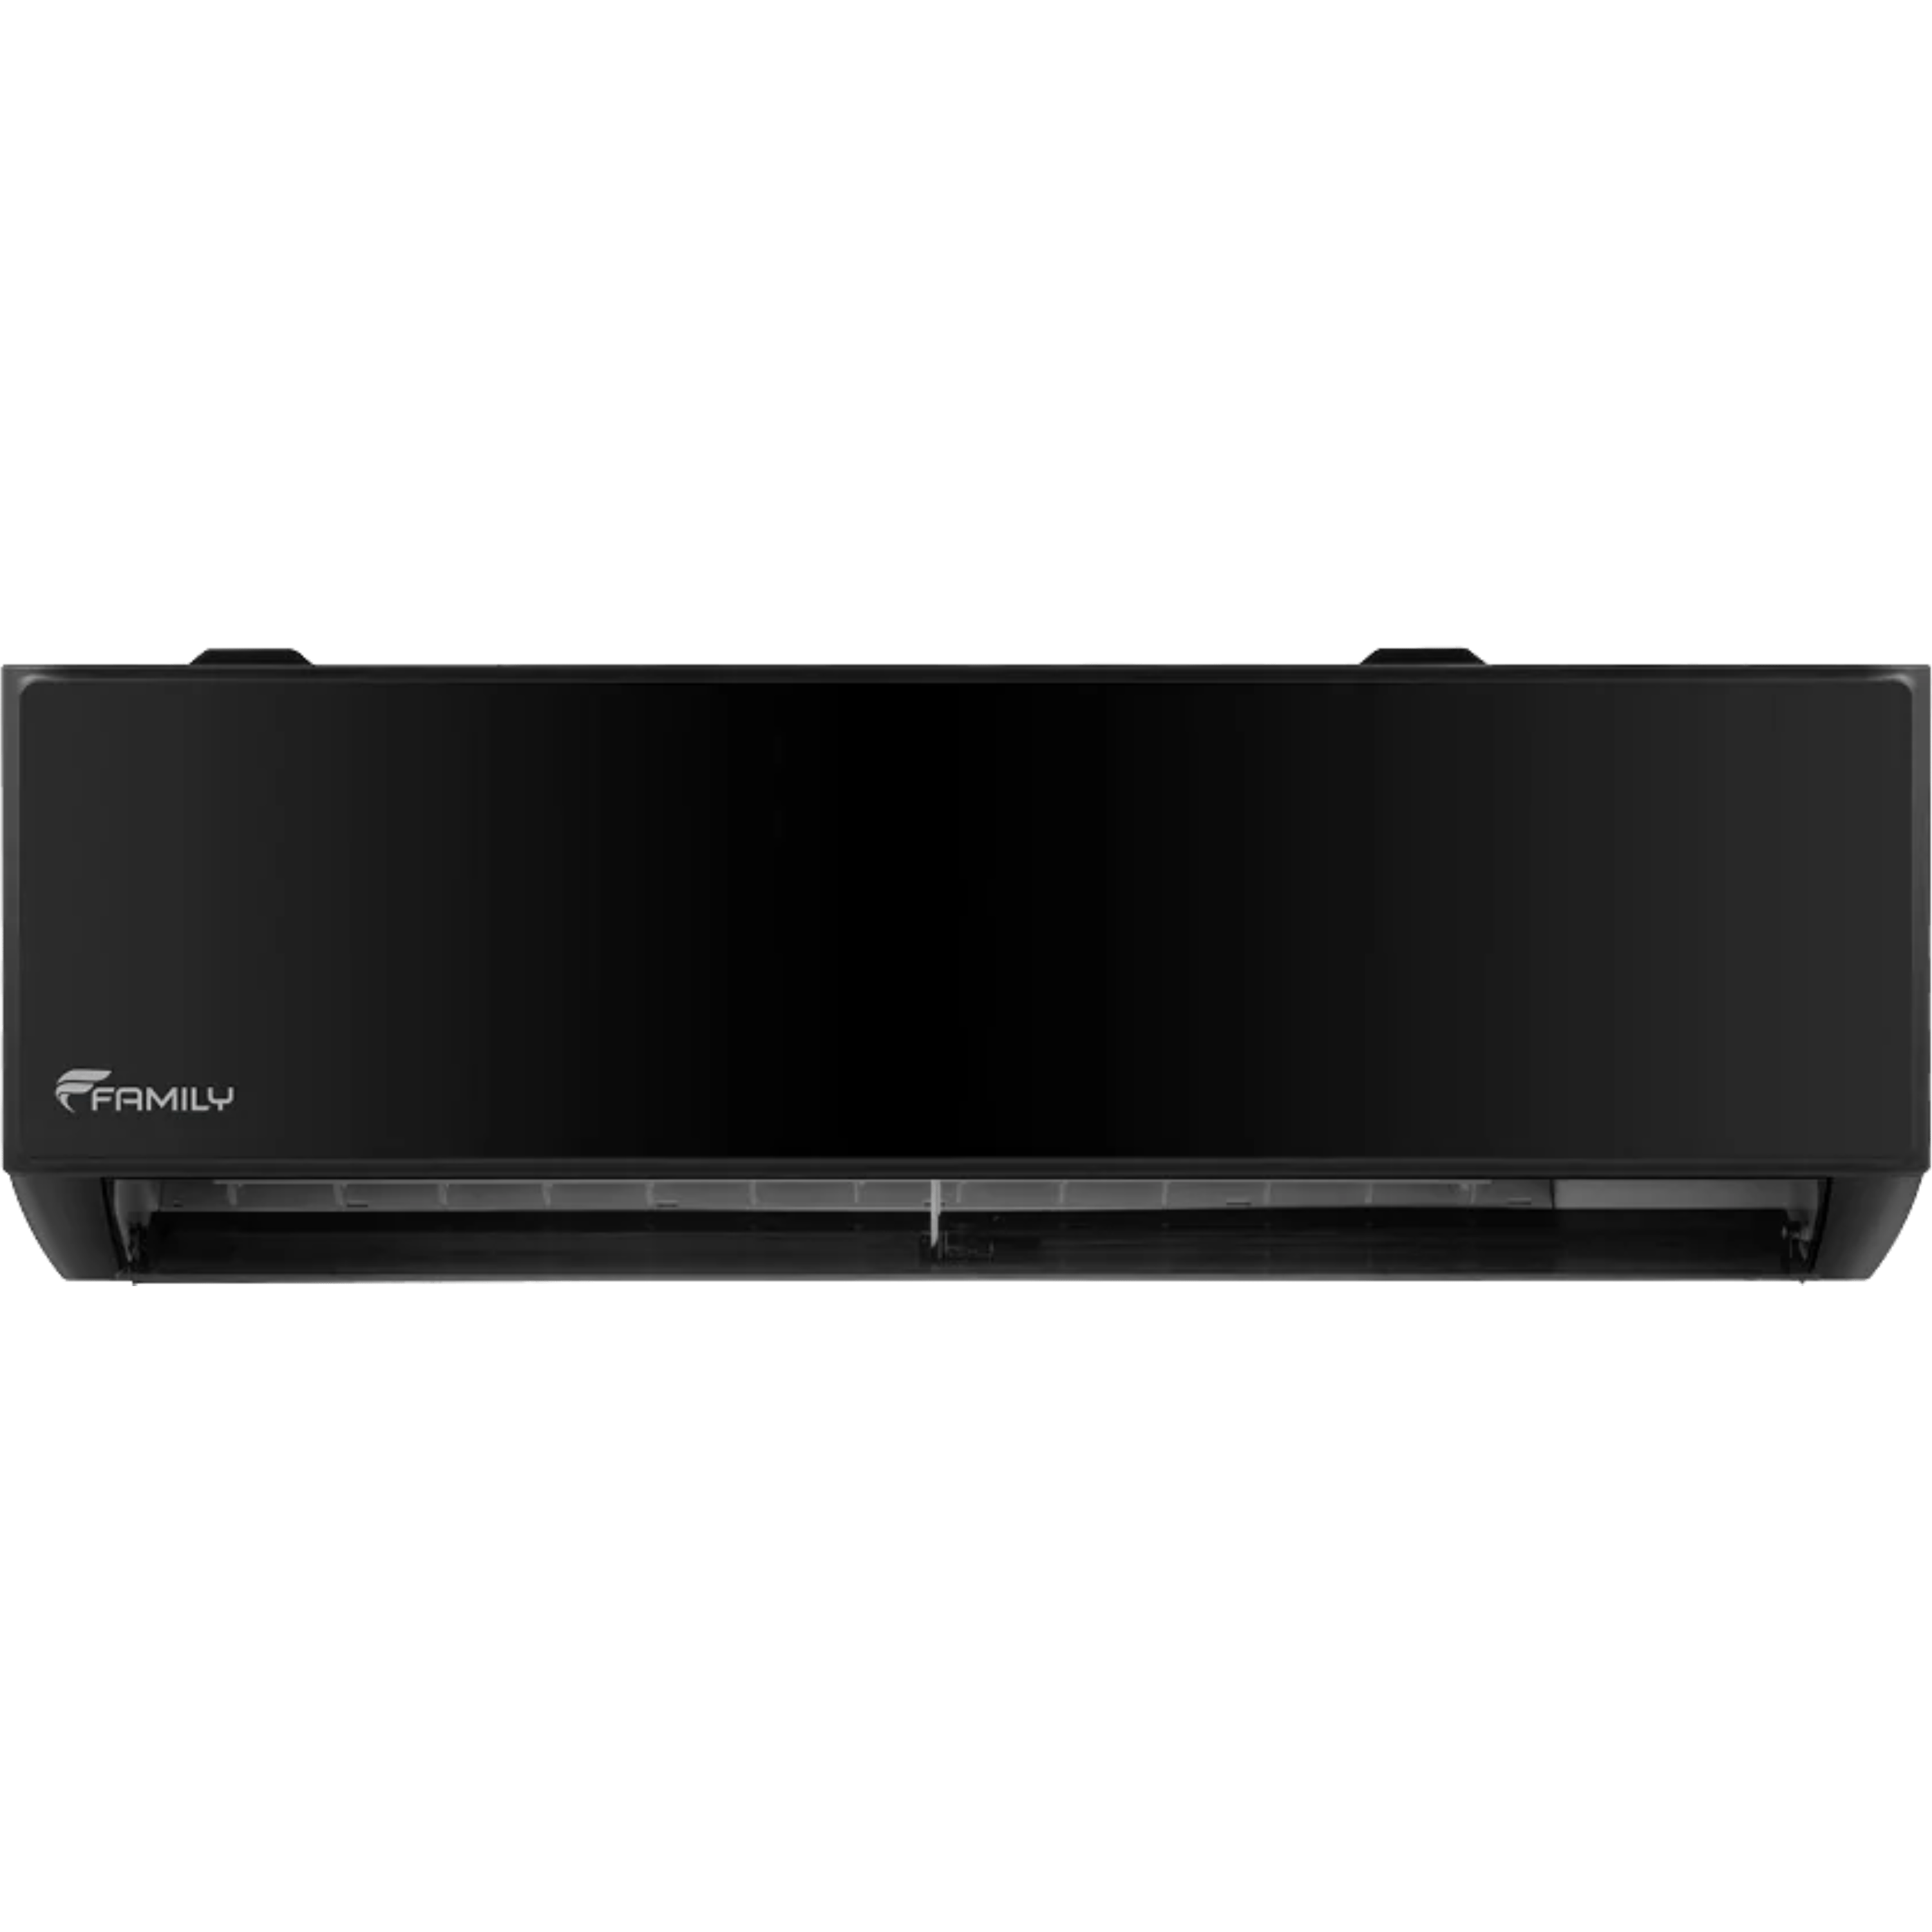 מזגן עילי Family Premium Black inverter WiFi 18 - צבע שחור שבע שנות אחריות ע